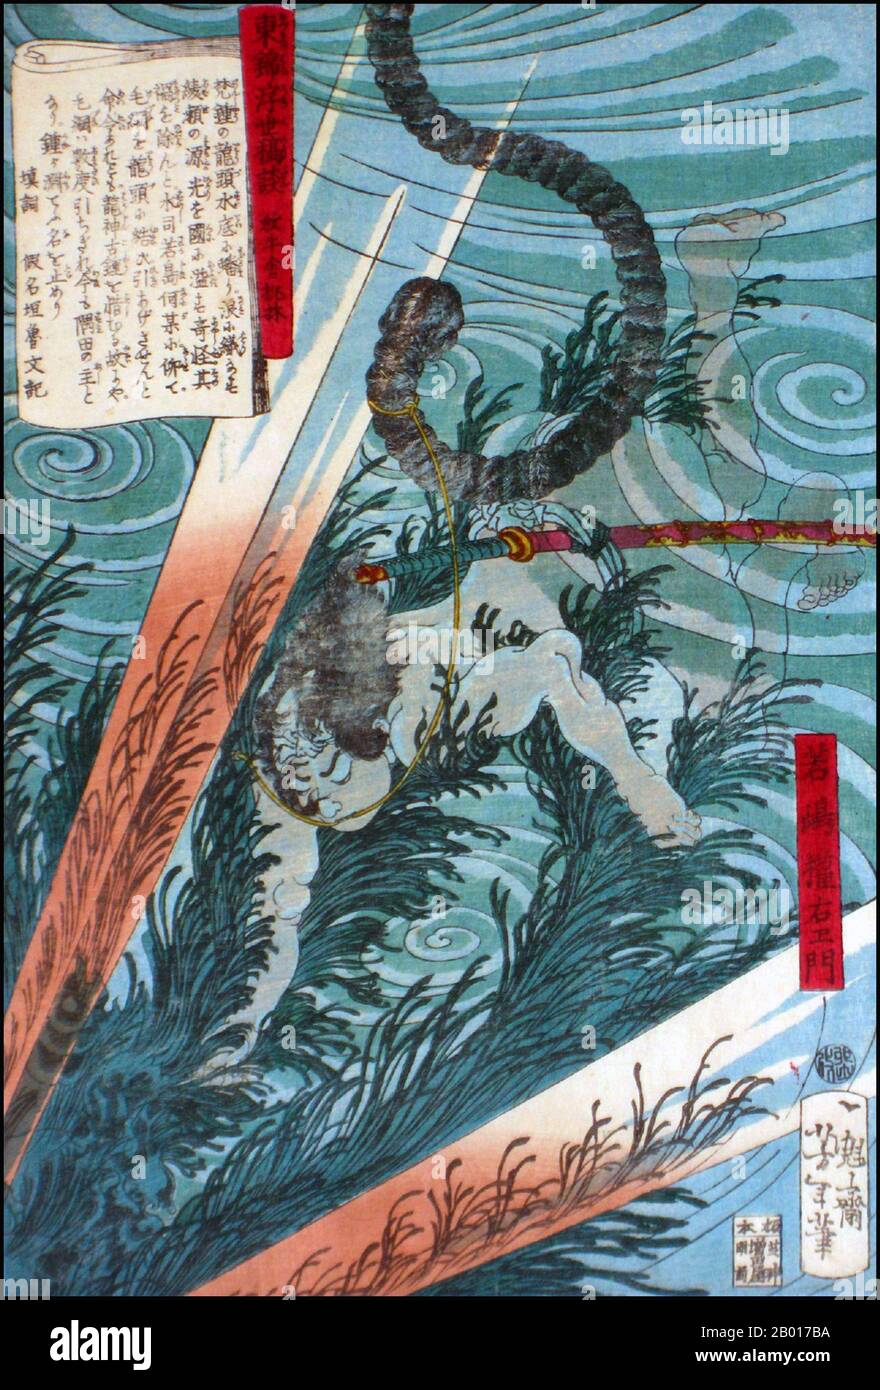 Japon: 'Wakashima Gonemon natation sous-marin'.Imprimé Ukiyo-e par Tsukioka Yoshitoshi (1839 - 9 juin 1892), ch.1867-1868.Tsukioka Yoshitoshi, également appelé Tiso Yoshitoshi, était un artiste japonais.Il est largement reconnu comme le dernier grand maître d'Ukiyo-e, un type d'impression de blocs de bois japonais.Il est également considéré comme l'un des plus grands innovateurs de la forme.Sa carrière s'est étendue à deux époques : les dernières années du Japon féodal et les premières années du Japon moderne après la restauration de Meiji. Banque D'Images